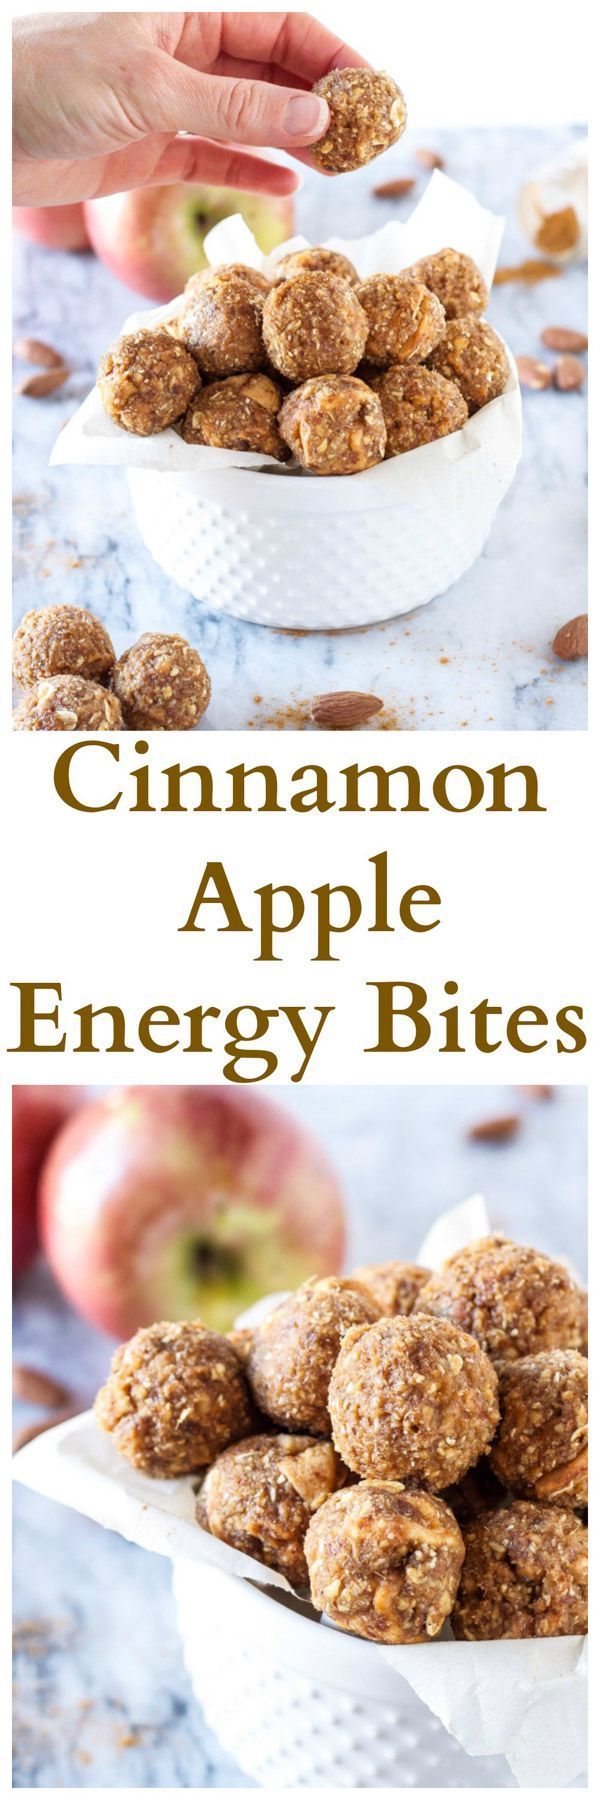 Cinnamon Apple Energy Bites